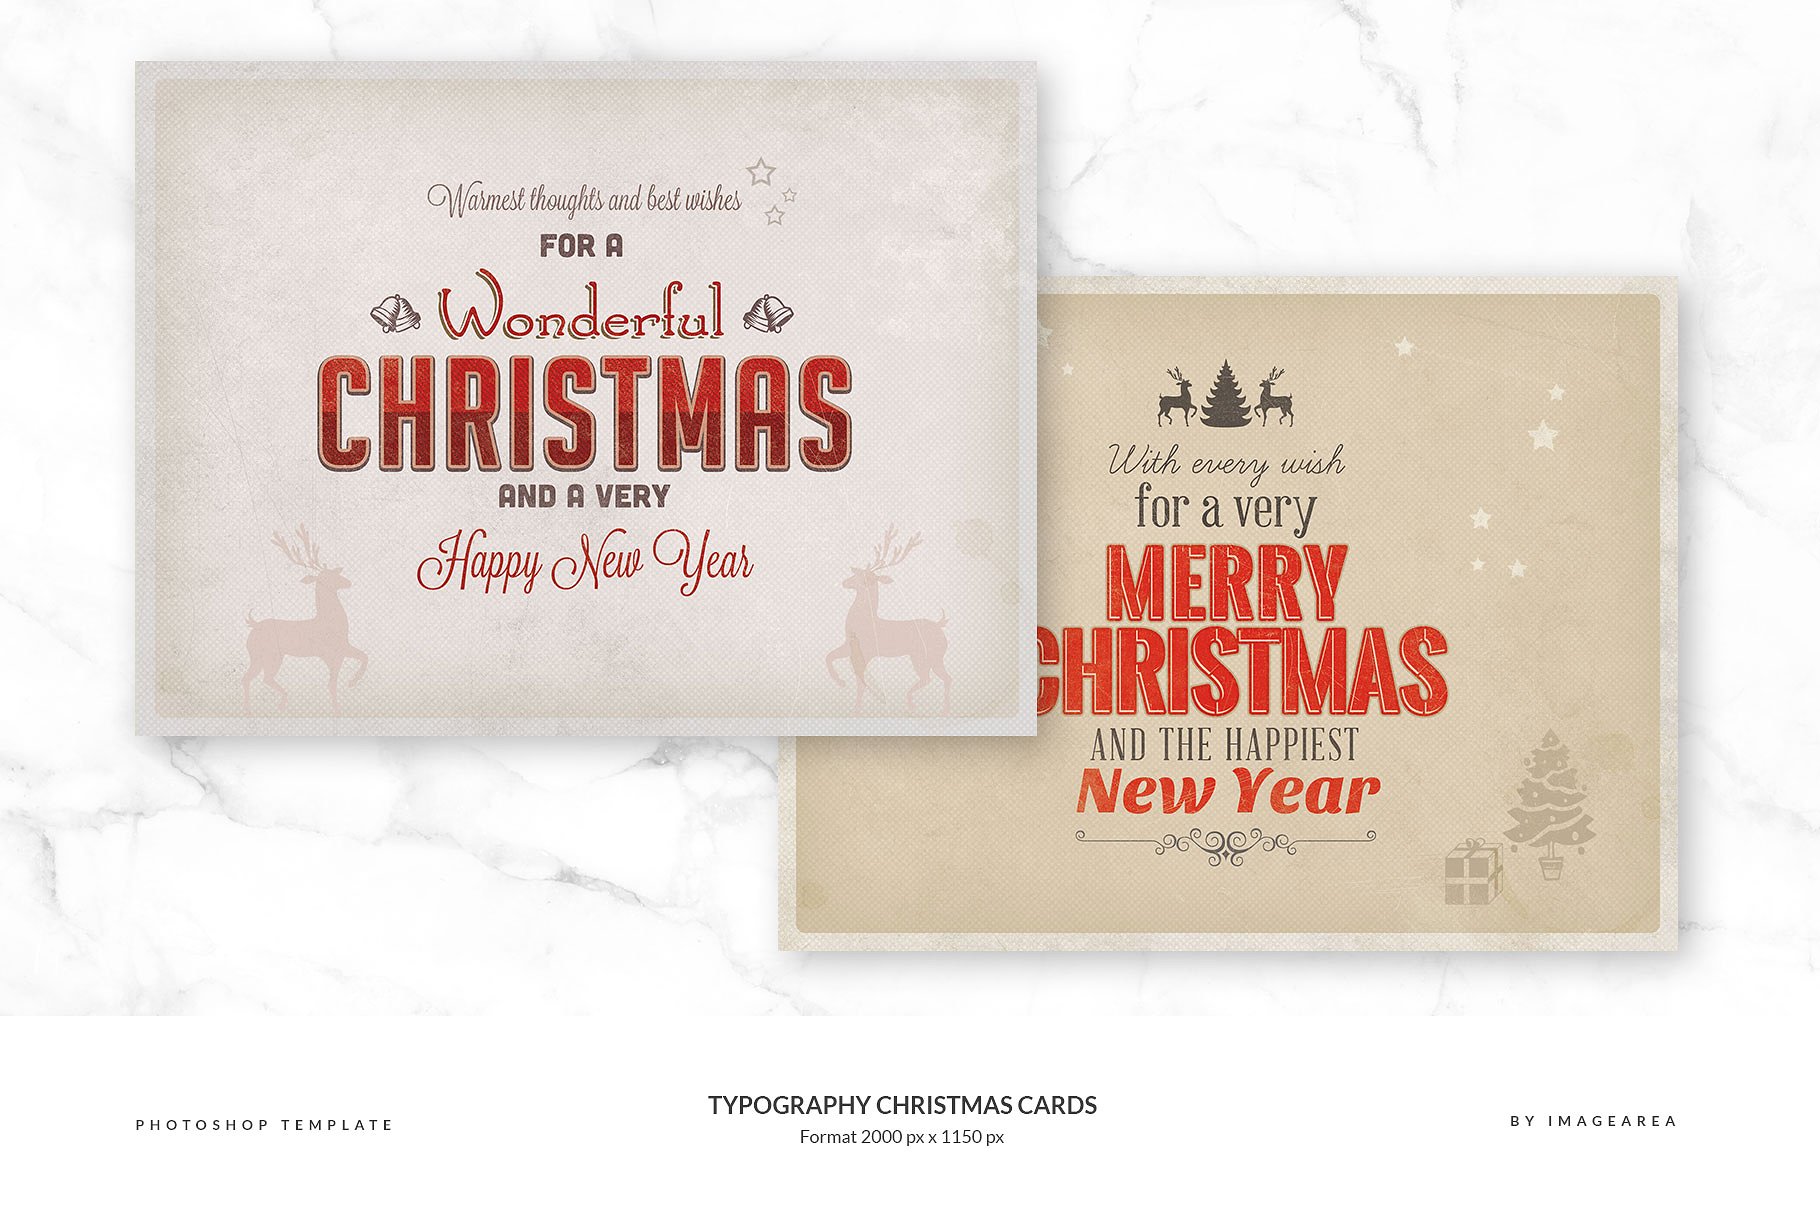 古典风格圣诞节活动贺卡模板 Typography Christmas Cards插图(2)